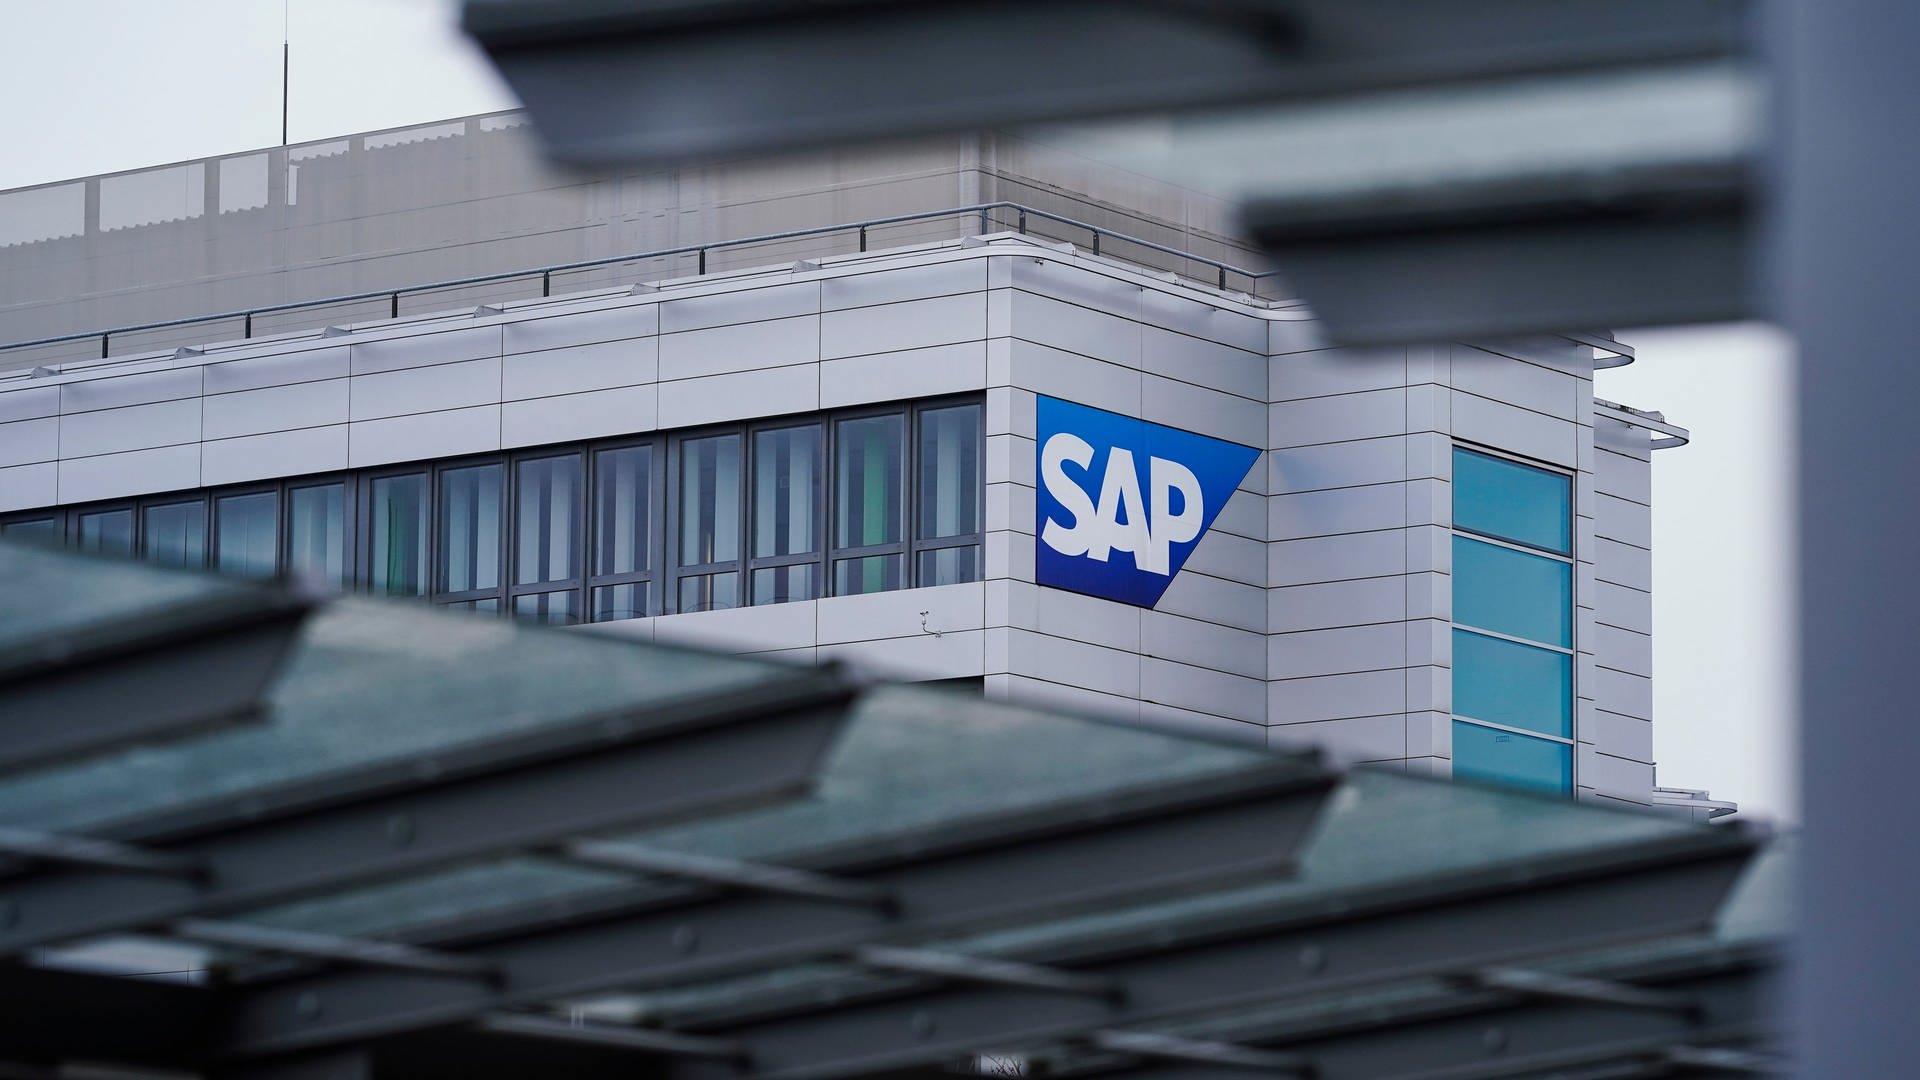 Homeoffice-Regelung bei SAP: Vorübergehende Einigung vor Mannheimer Gericht